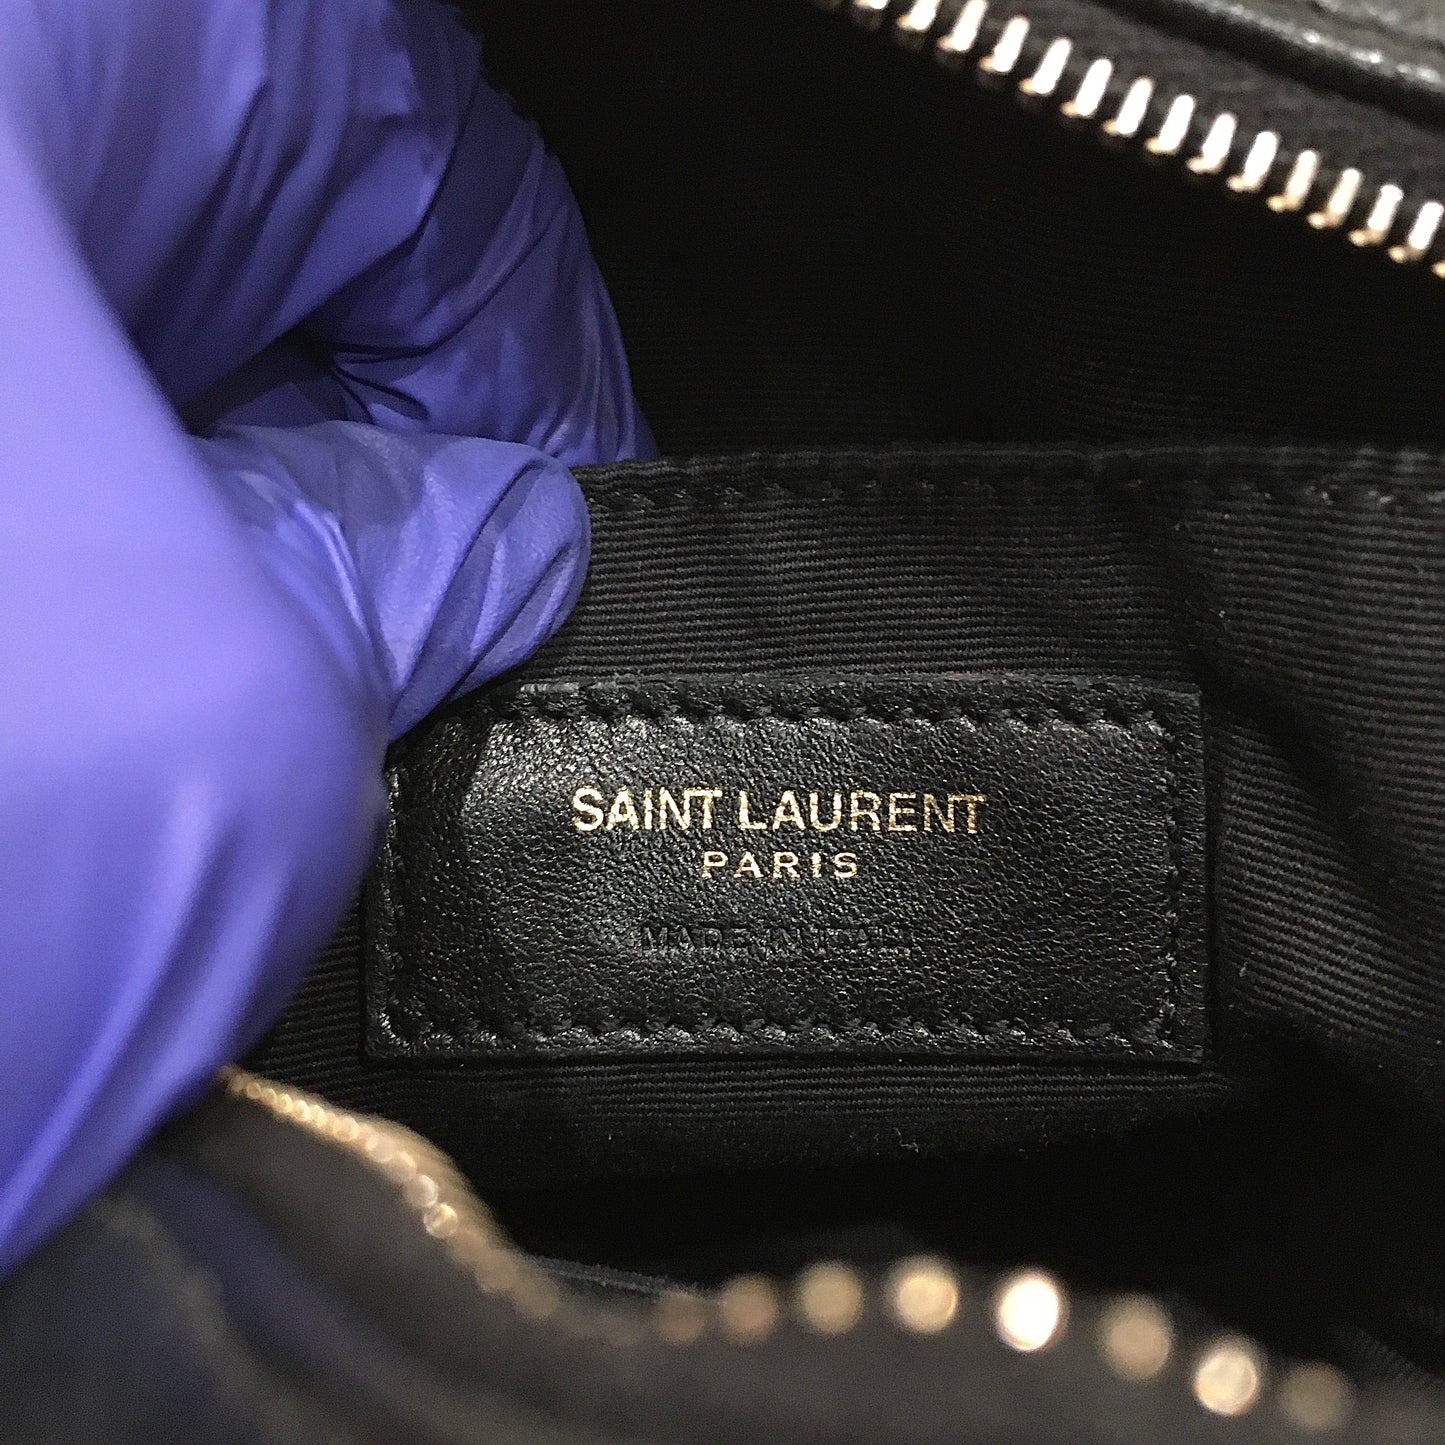 Yves Saint Laurent Black Leather Mini Tassel Camera Bag Sku# 70524